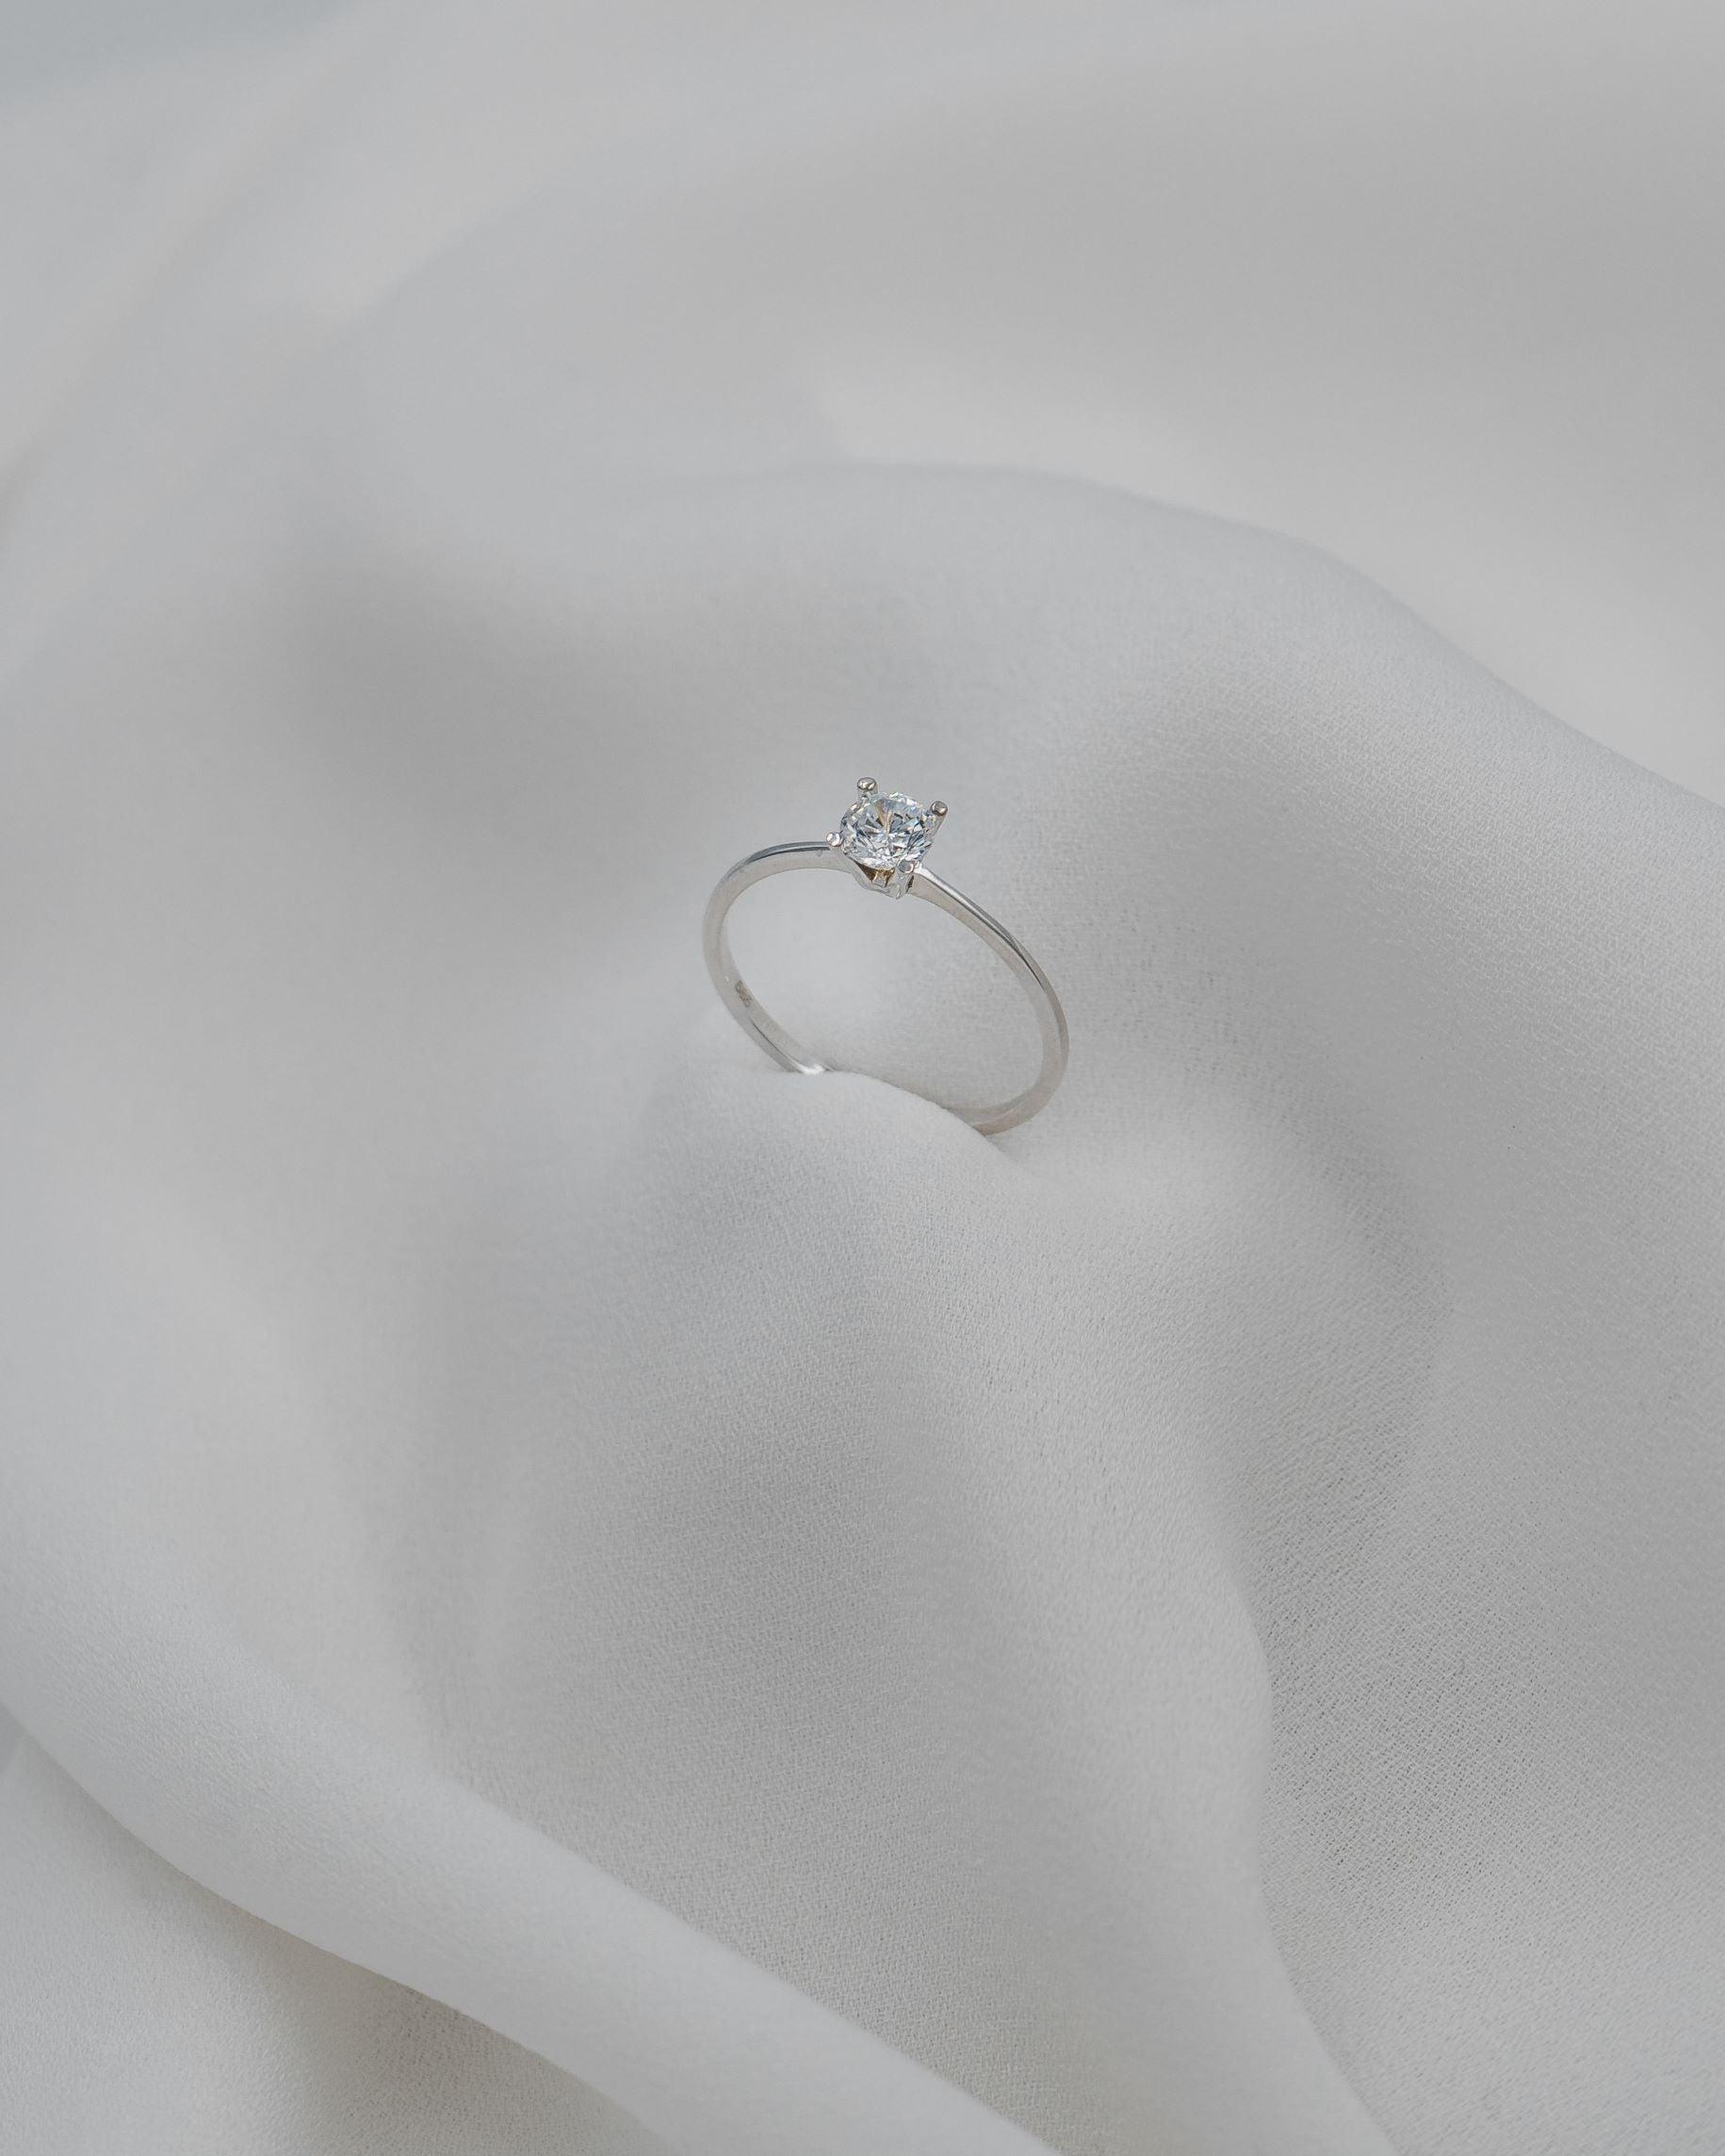 Μονόπετρο δαχτυλίδι γάμου με κεντρικό διαμάντι σε καστόνι σχήματος "V" κατασκευασμένο από λευκόχρυσο, ακουμπισμένο σε λευκό μετάξι.